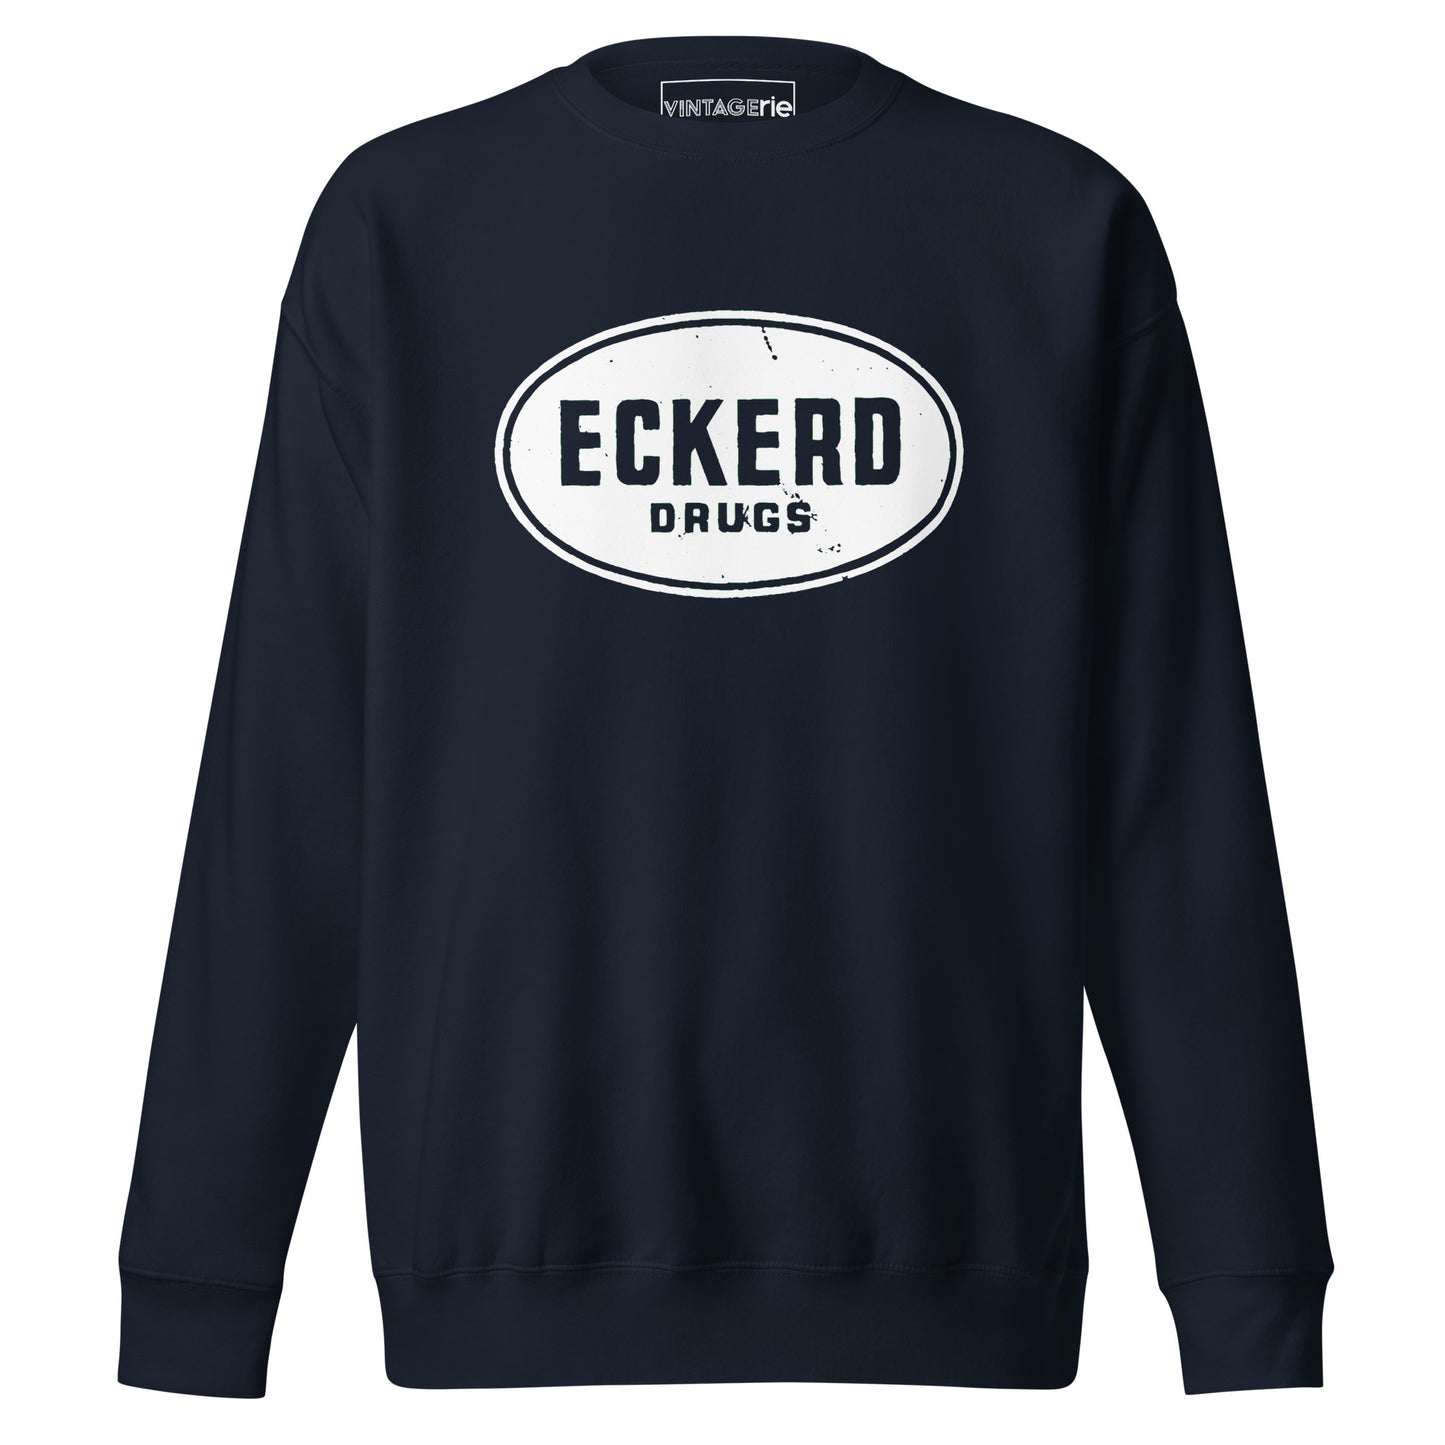 Eckerd Drugs Sweatshirt